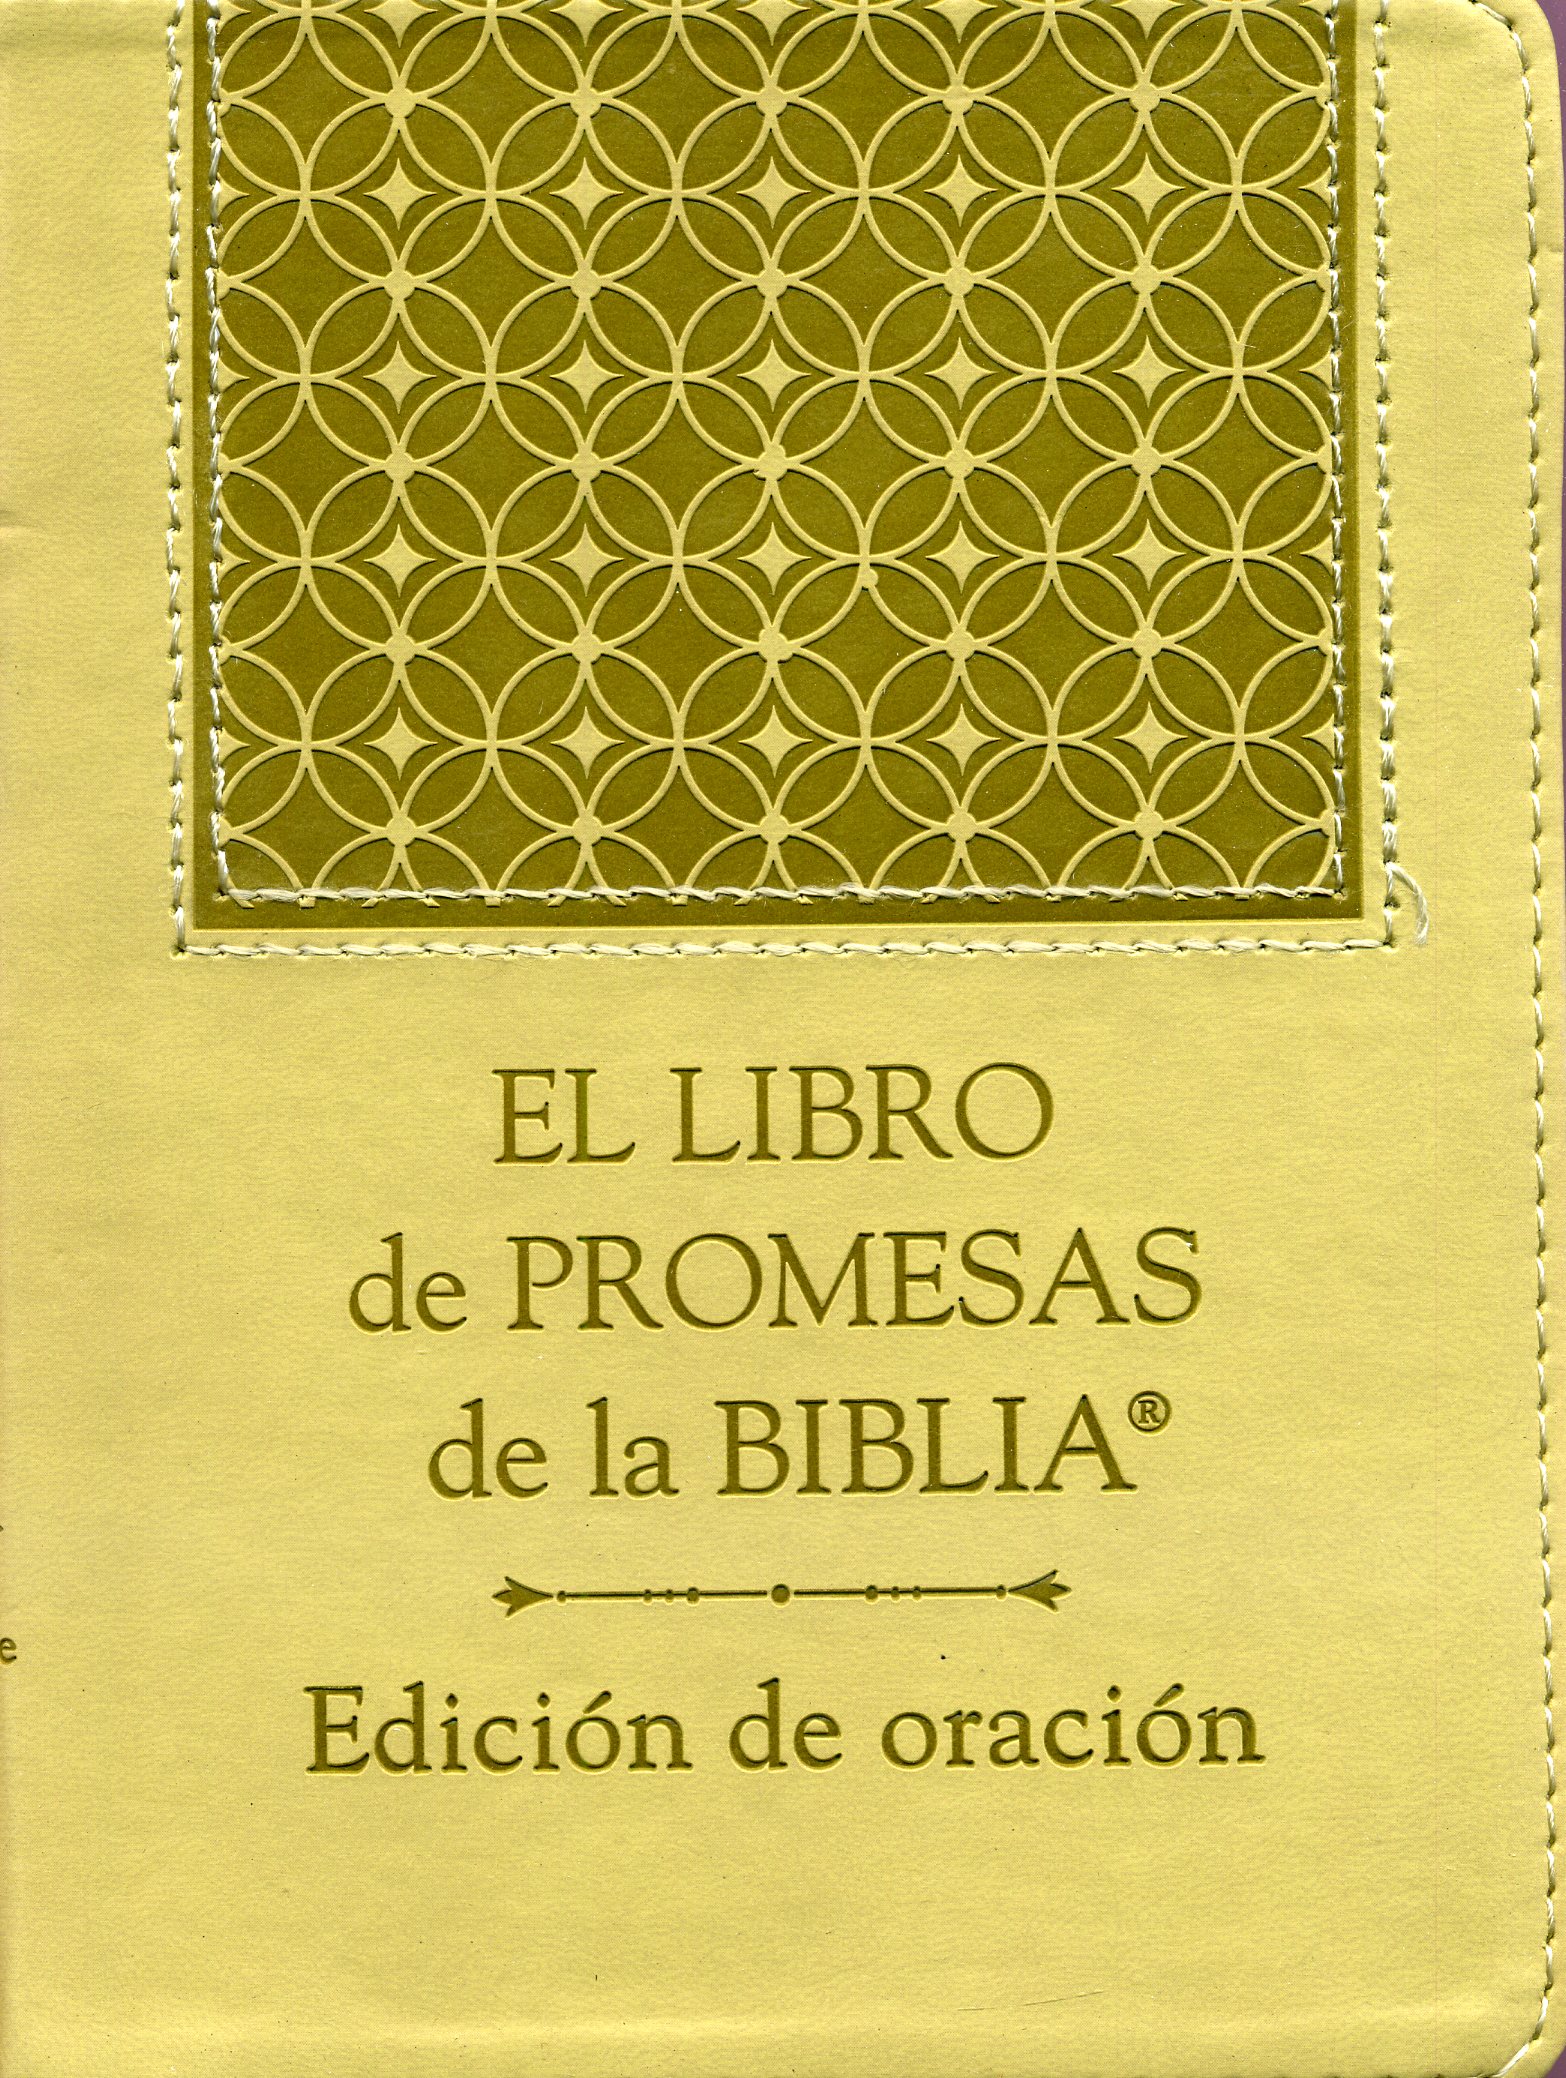 El libro de promesas de la Biblia - Edición de oración